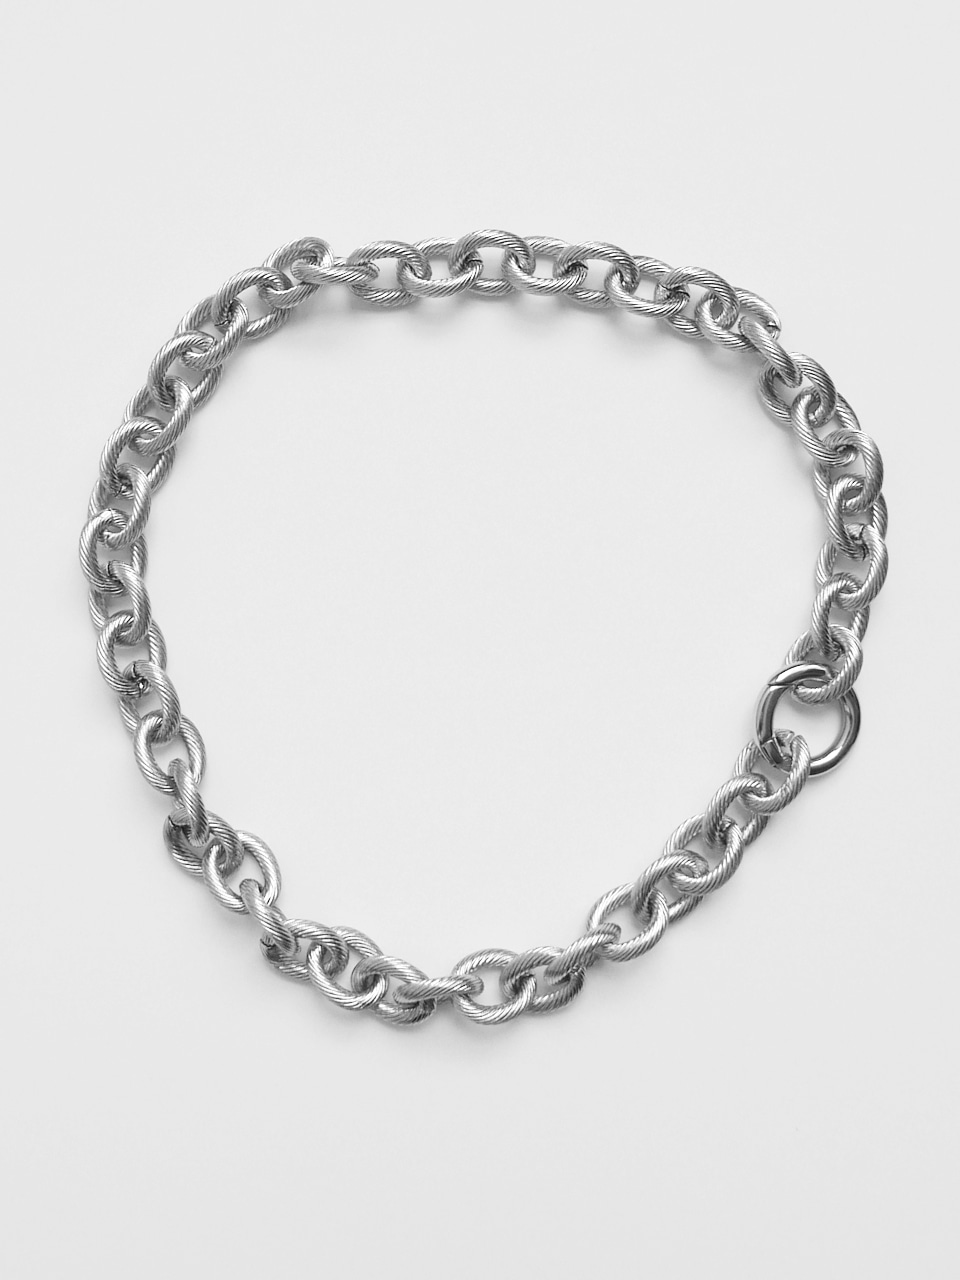 bold chain necklace 볼드체인목걸이